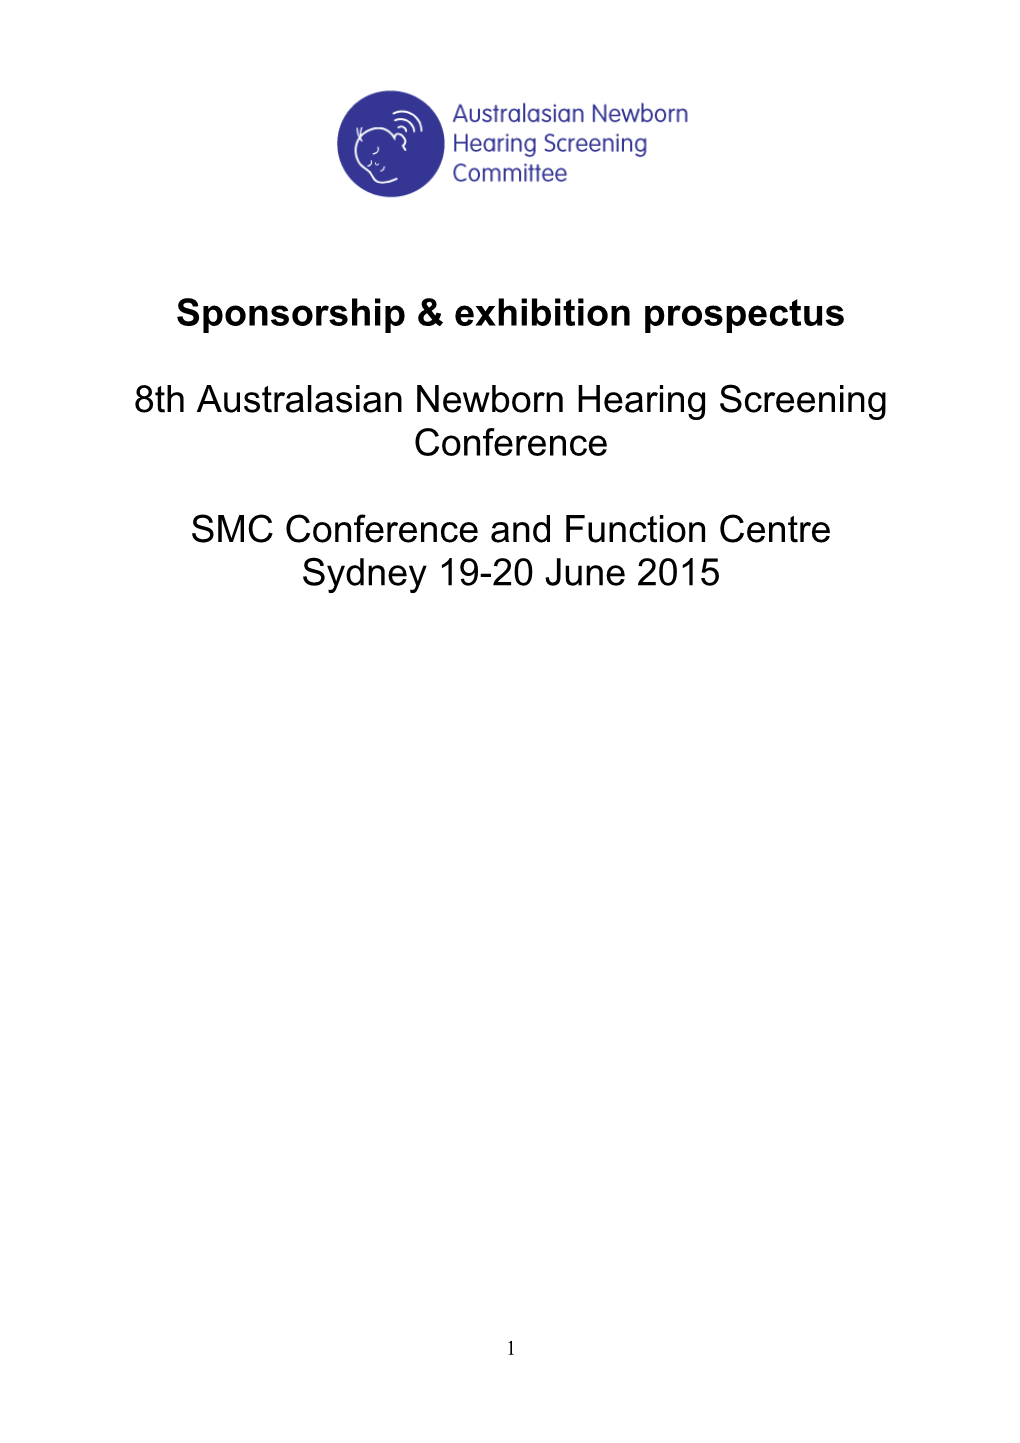 Sponsorship & Exhibition Prospectus